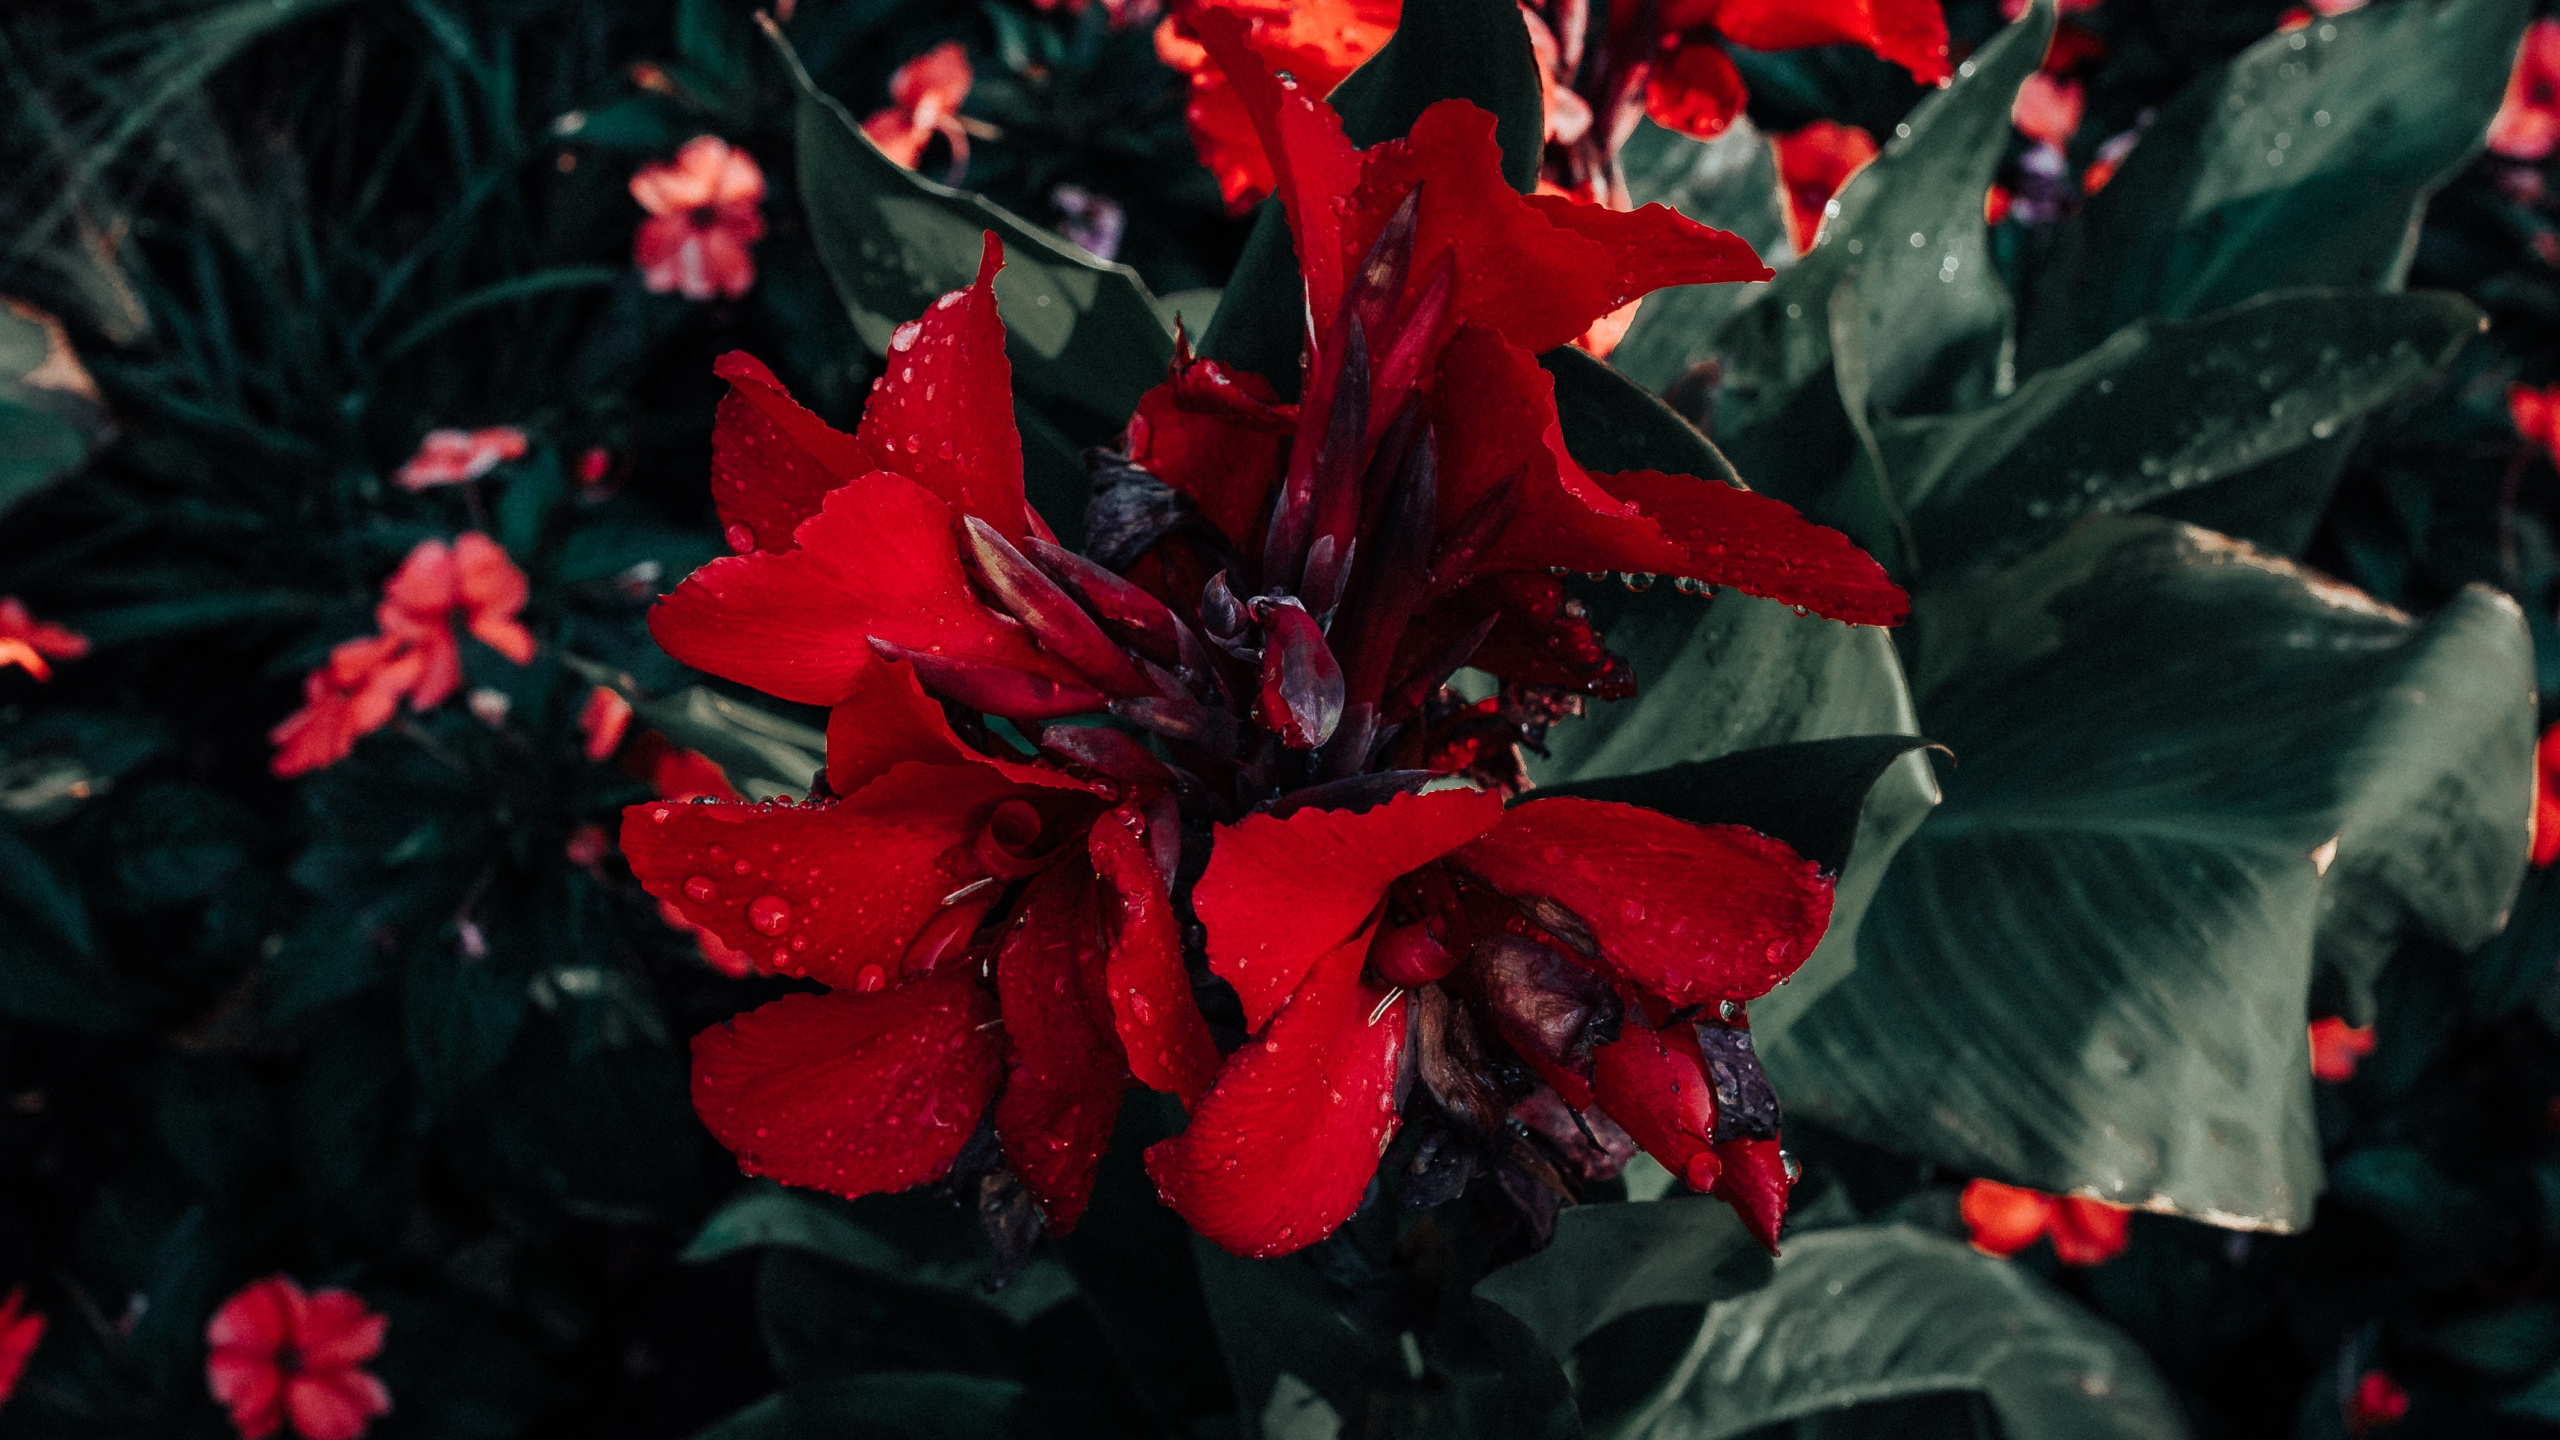 一品红, 红色的, 显花植物, 野花, 年度工厂 壁纸 2560x1440 允许